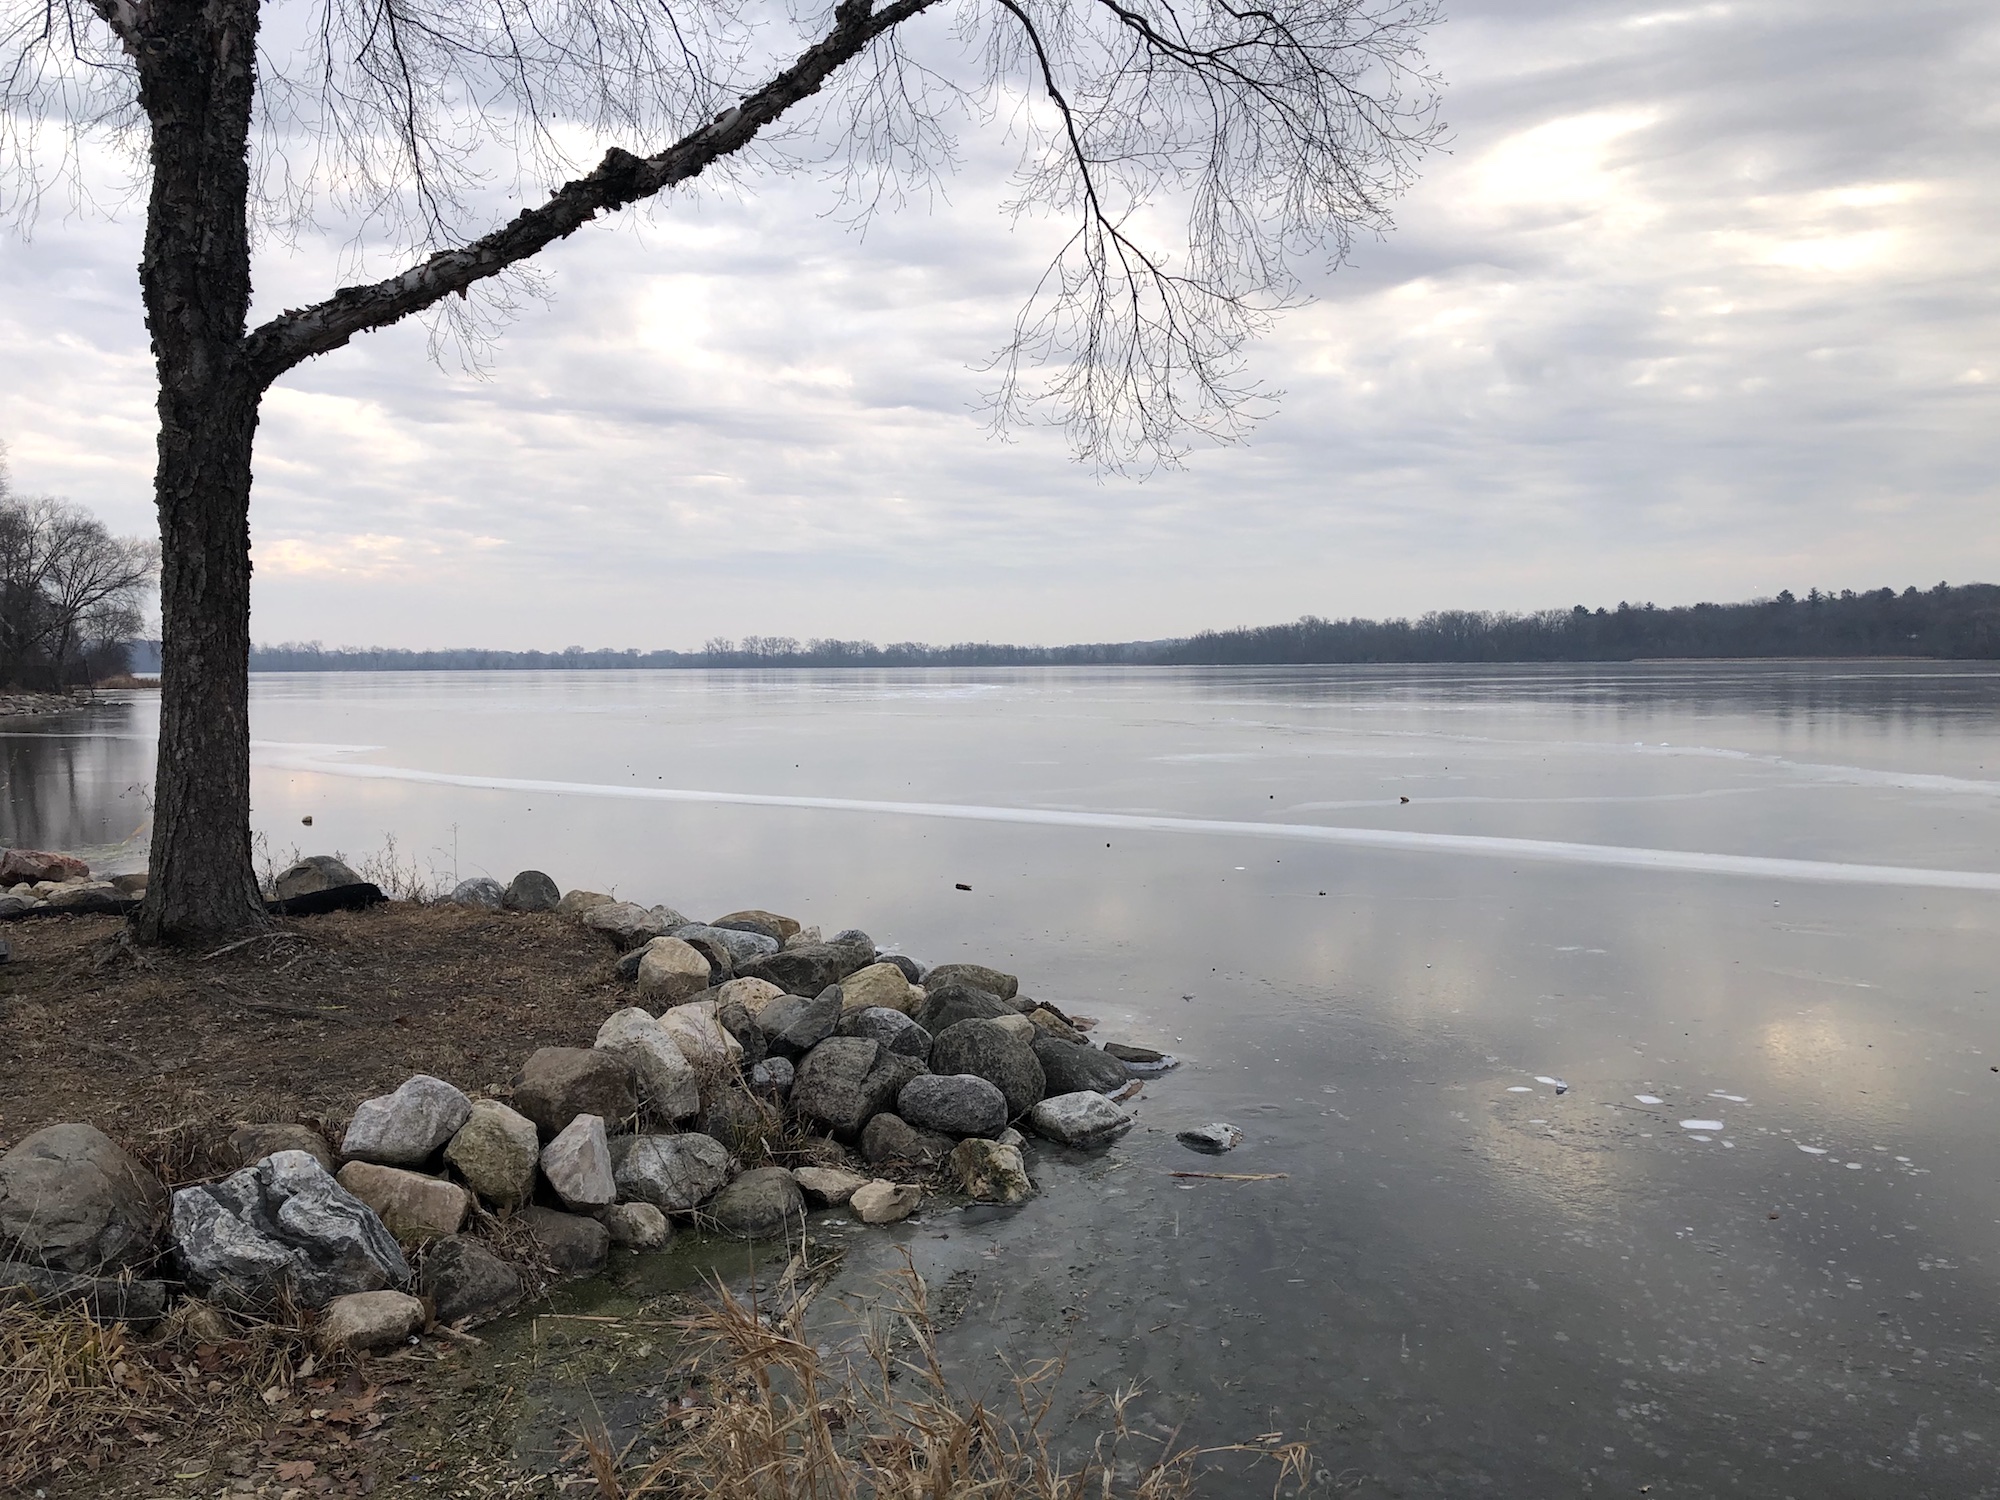 Lake Wingra on December 12, 2019.